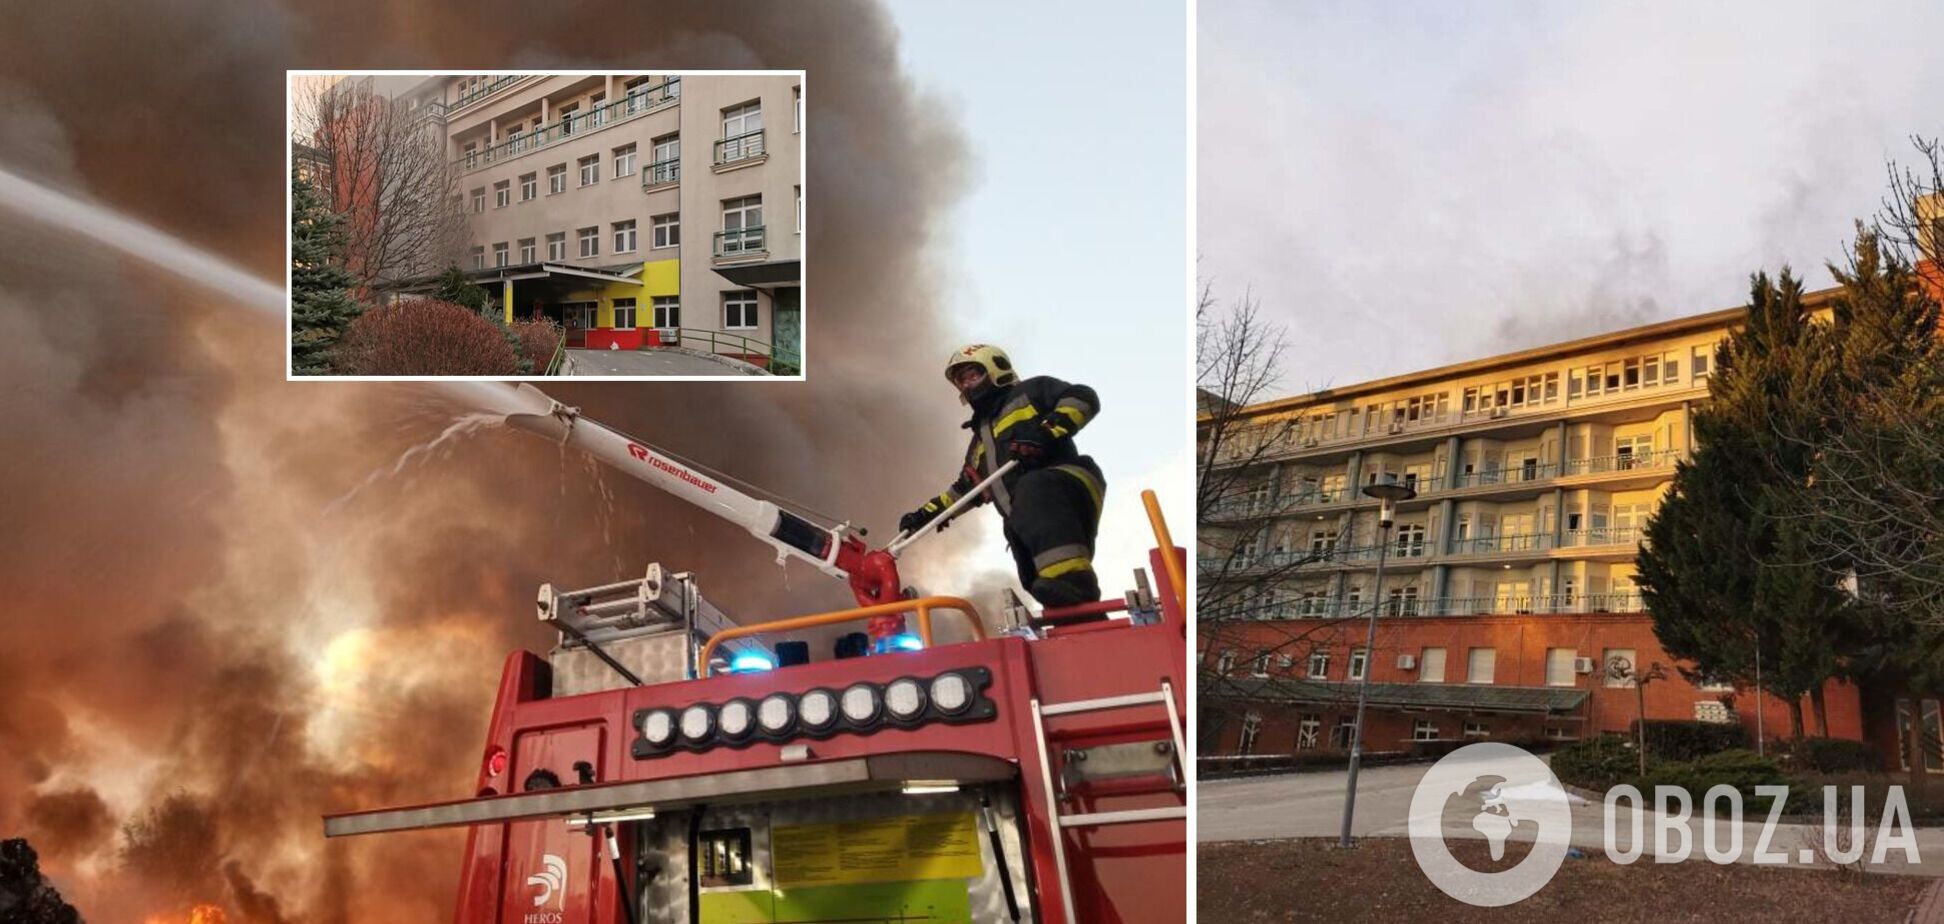 У Будапешті сталася пожежа в лікарні: є загиблий, десятки людей евакуювали. Фото